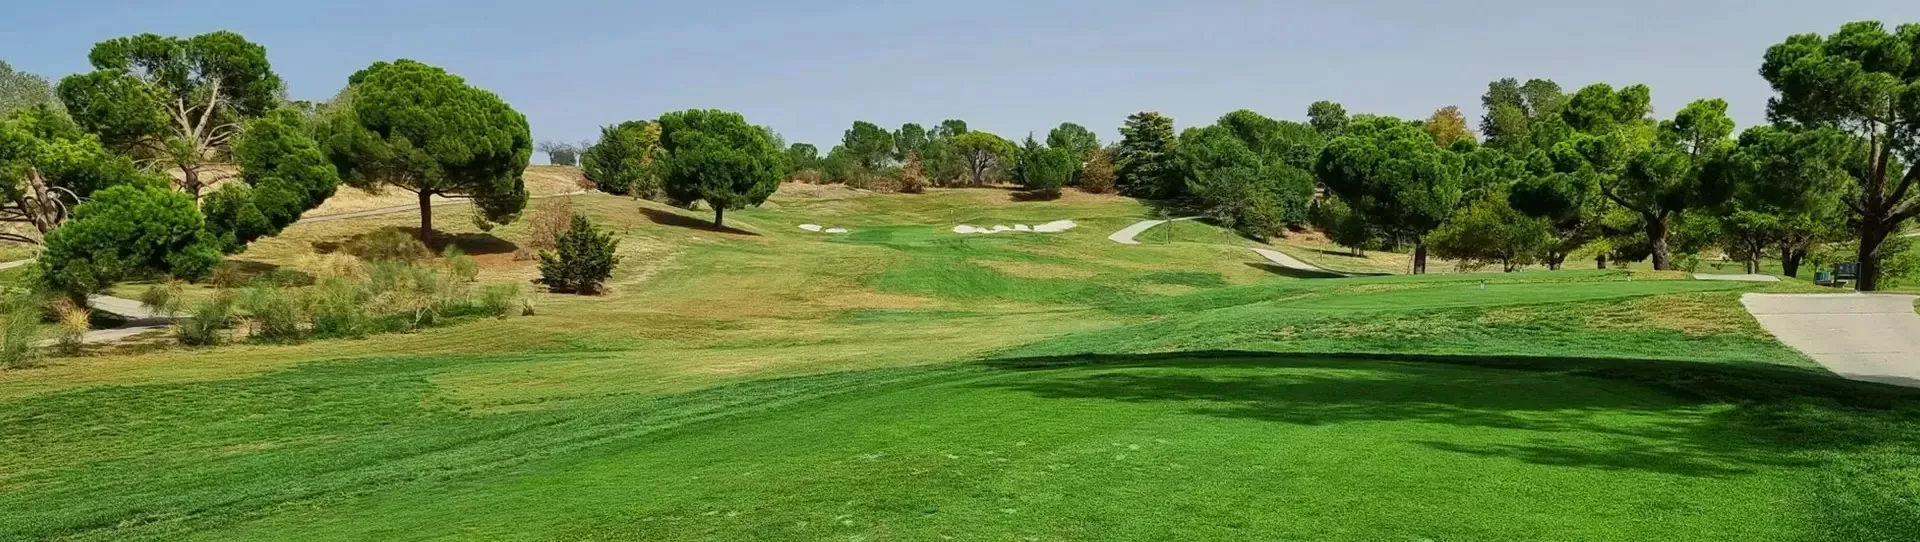 Spain golf courses - La Moraleja Golf Course II - Photo 1